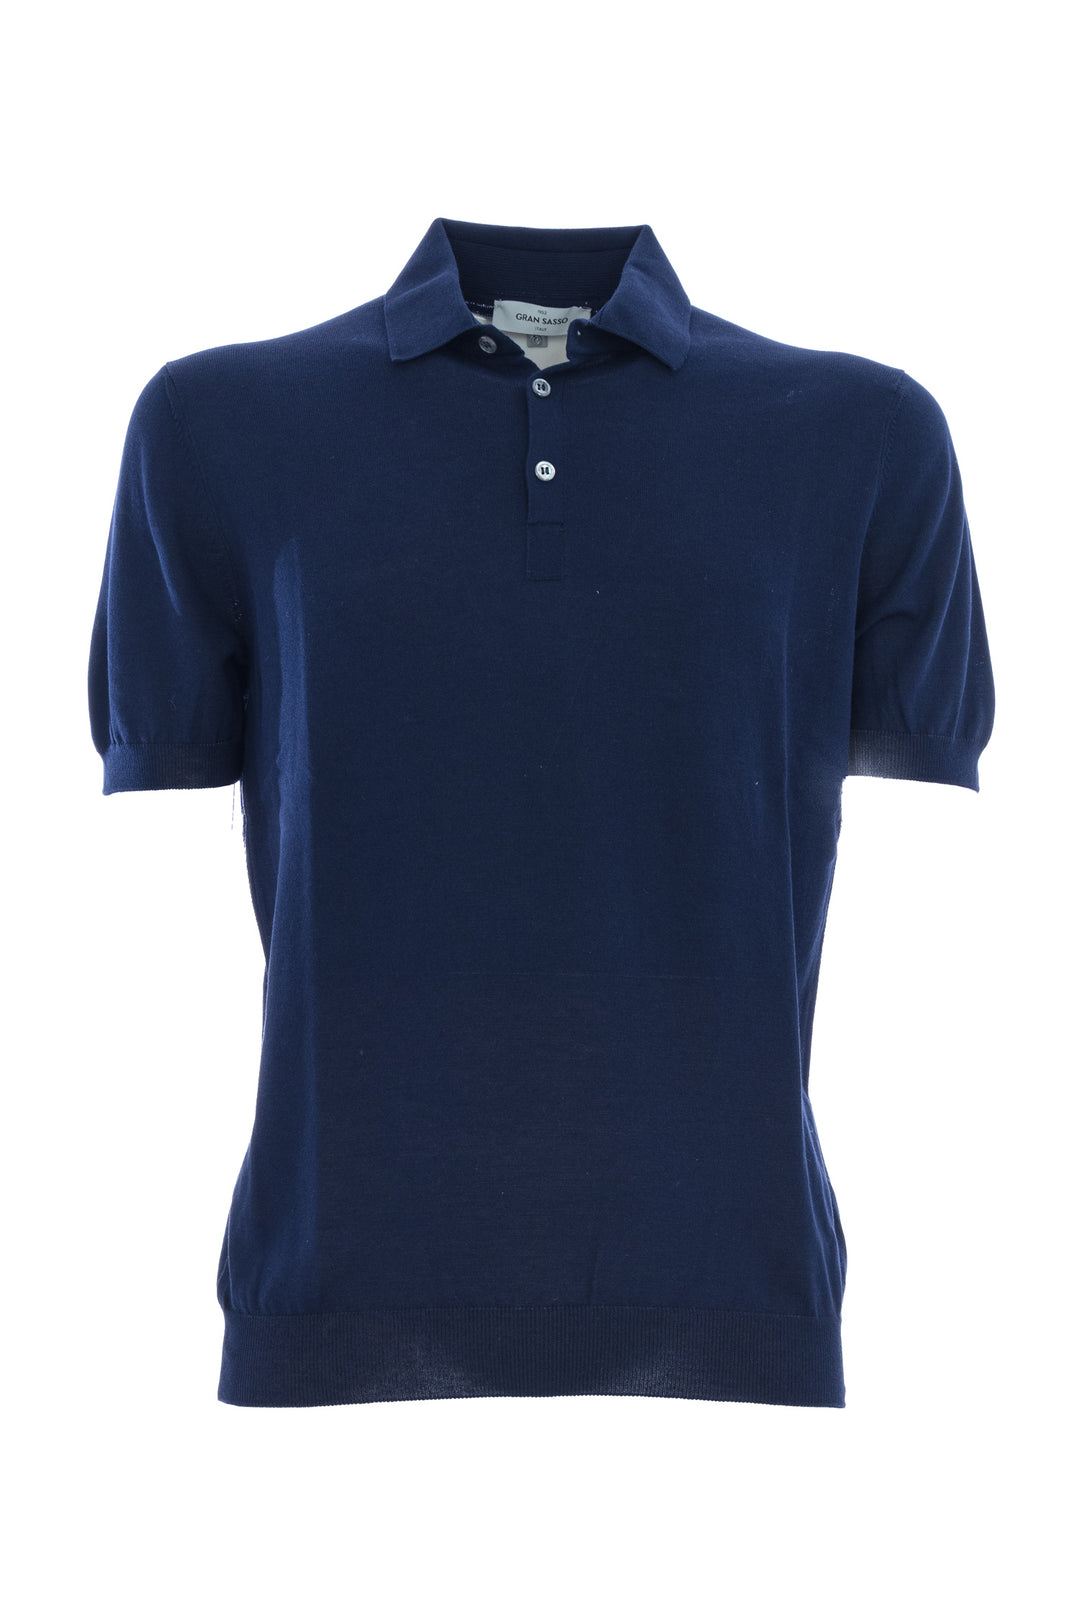 GRAN SASSO Polo in maglia fresh cotton blu scuro - Mancinelli 1954